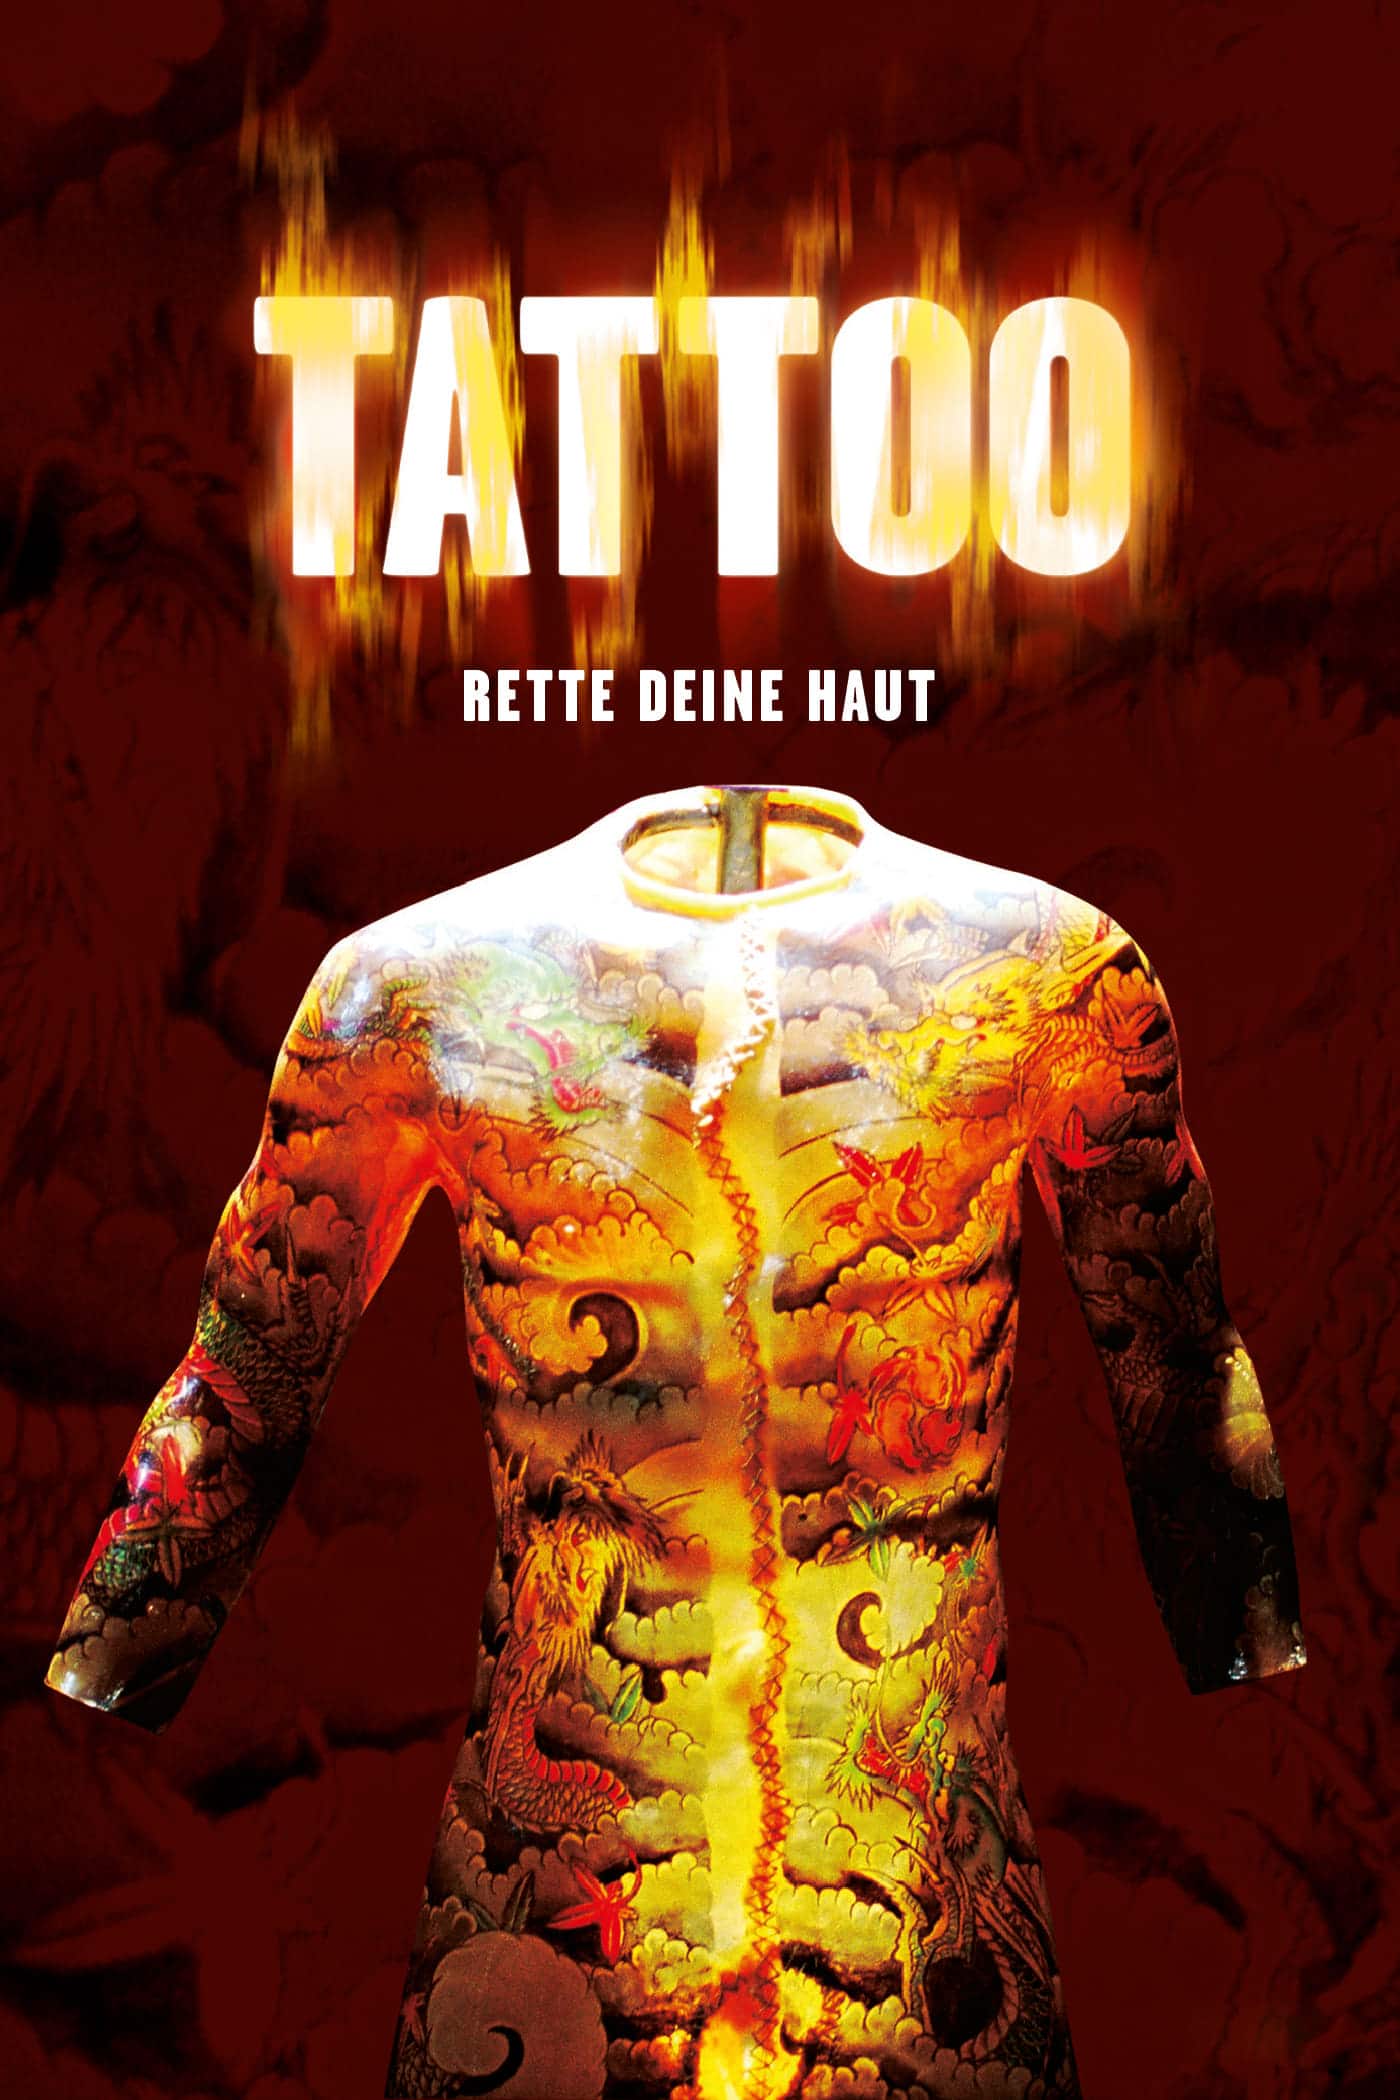 Plakat von "Tattoo"